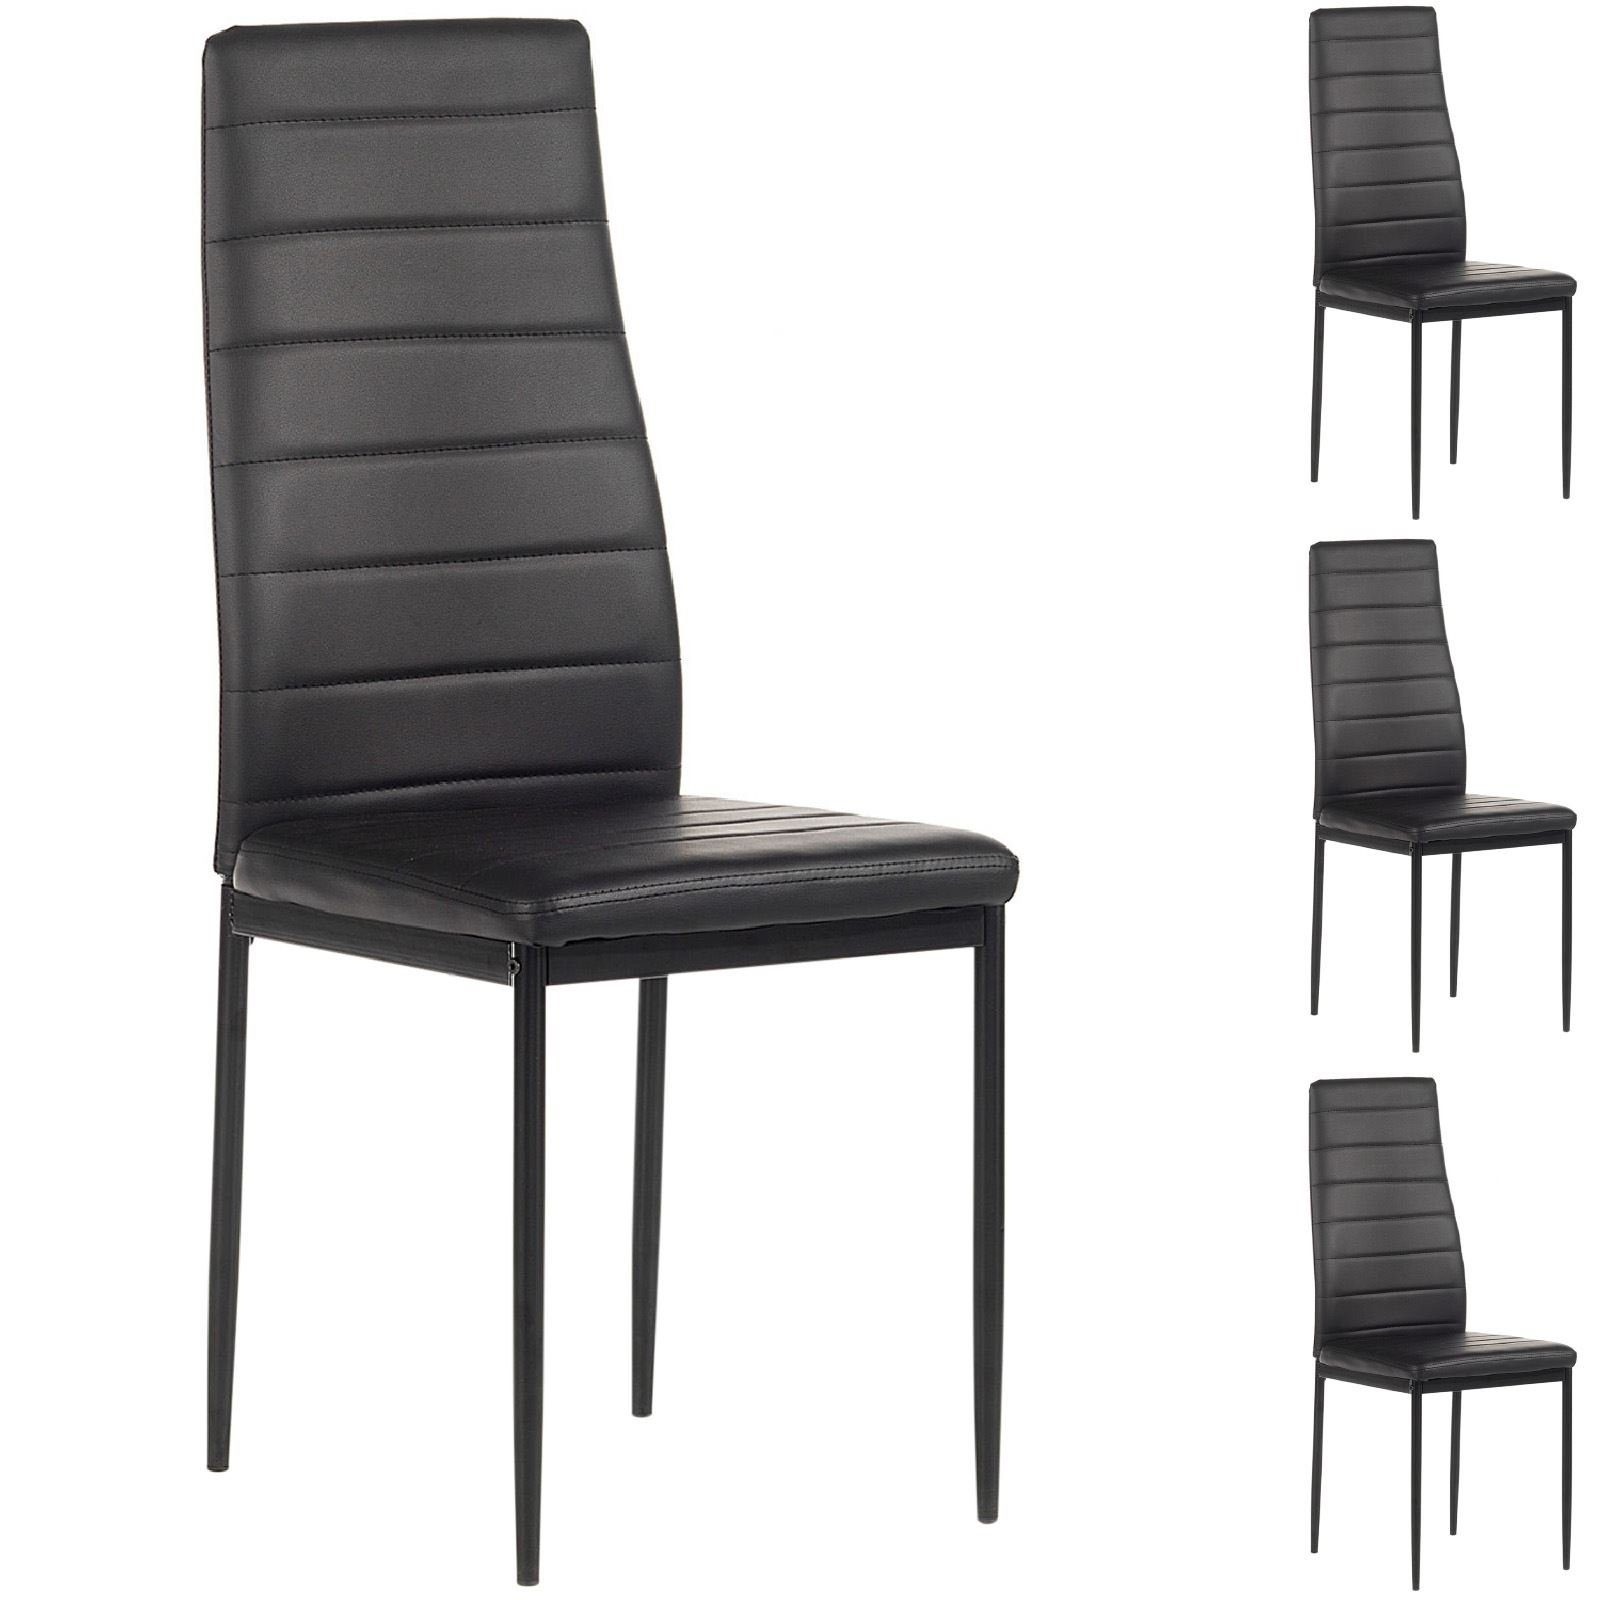 IDIMEX Polsterstuhl NATHALIE (4 St), 4er SET Esszimmerstuhl Essgruppe Küchenstuhl in schwarz grau oder weis schwarz/schwarz